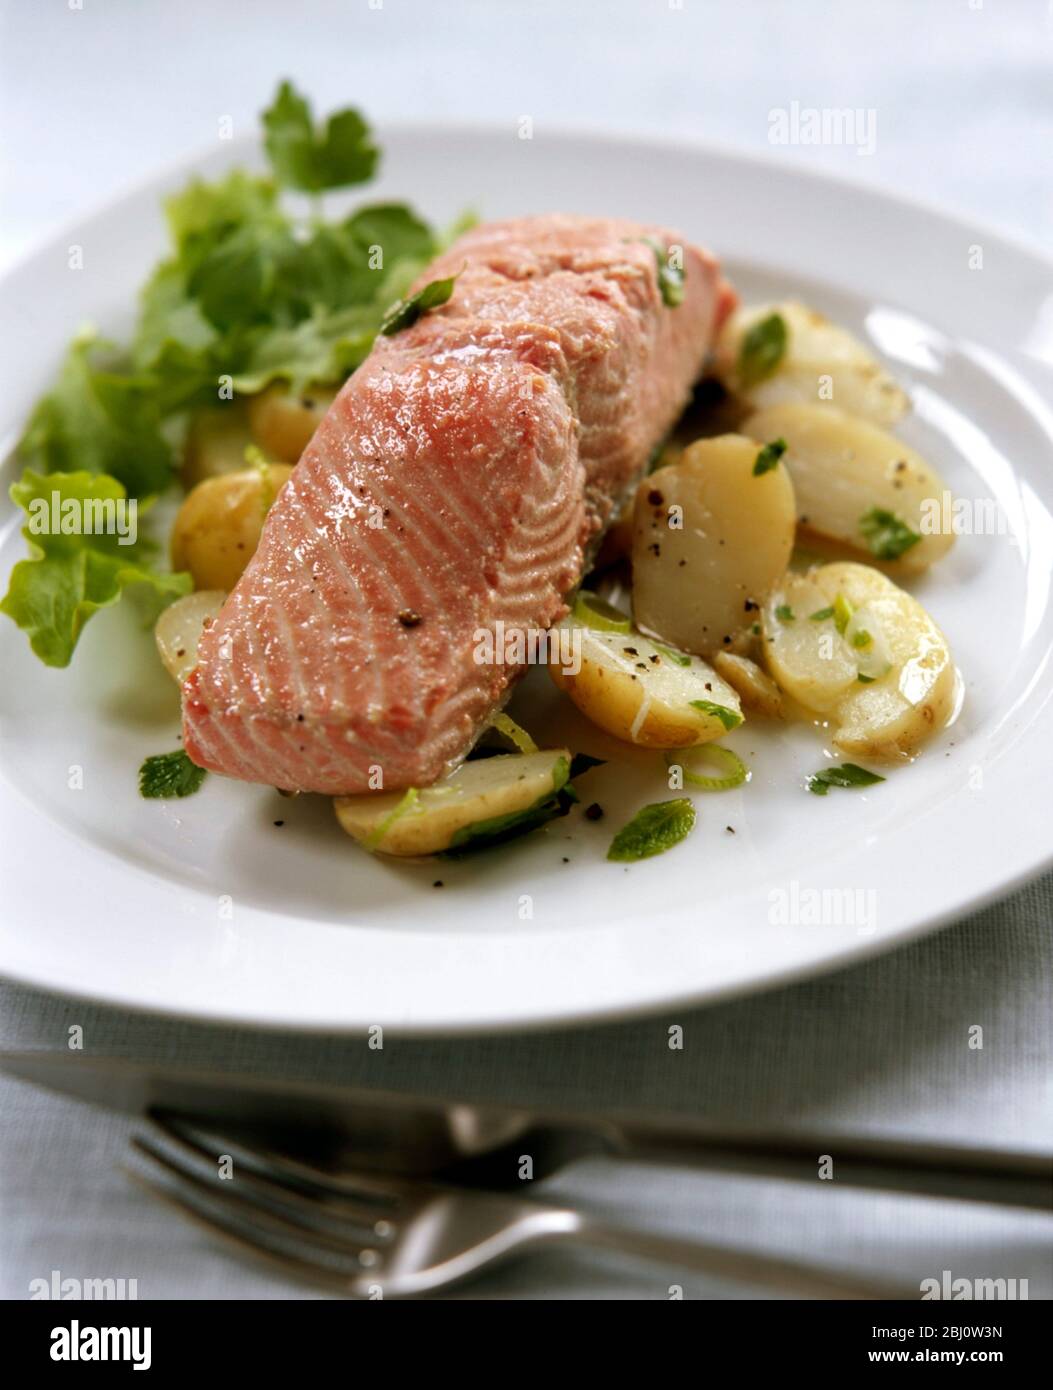 Filetto di salmone alla griglia su insalata di patate nuove con erbe, insalata verde, guarnito con scorza di limone. - Foto Stock